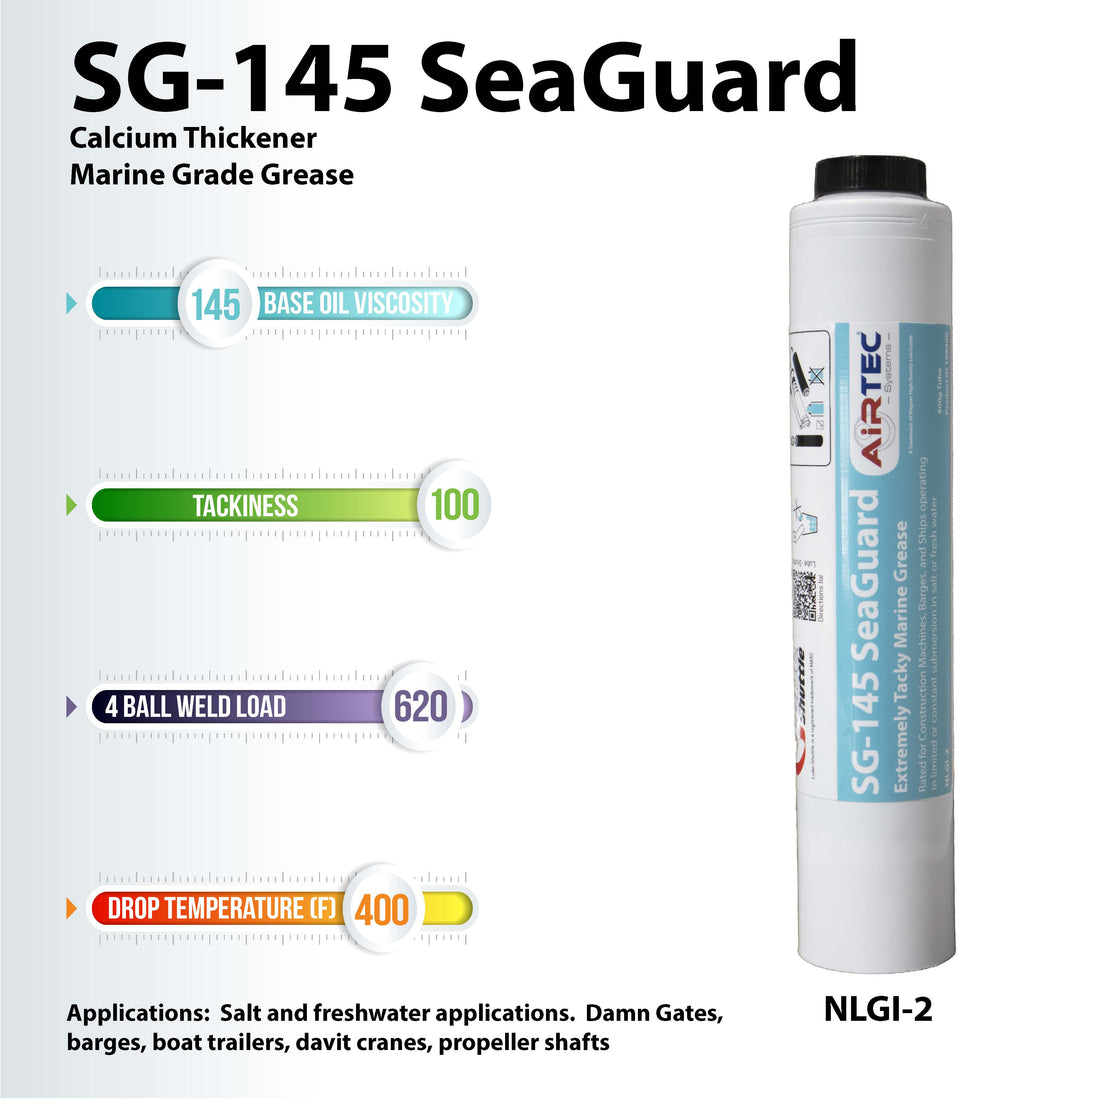 AirTec Grease:  SG-145 SeaGuard Marine Grade Grease